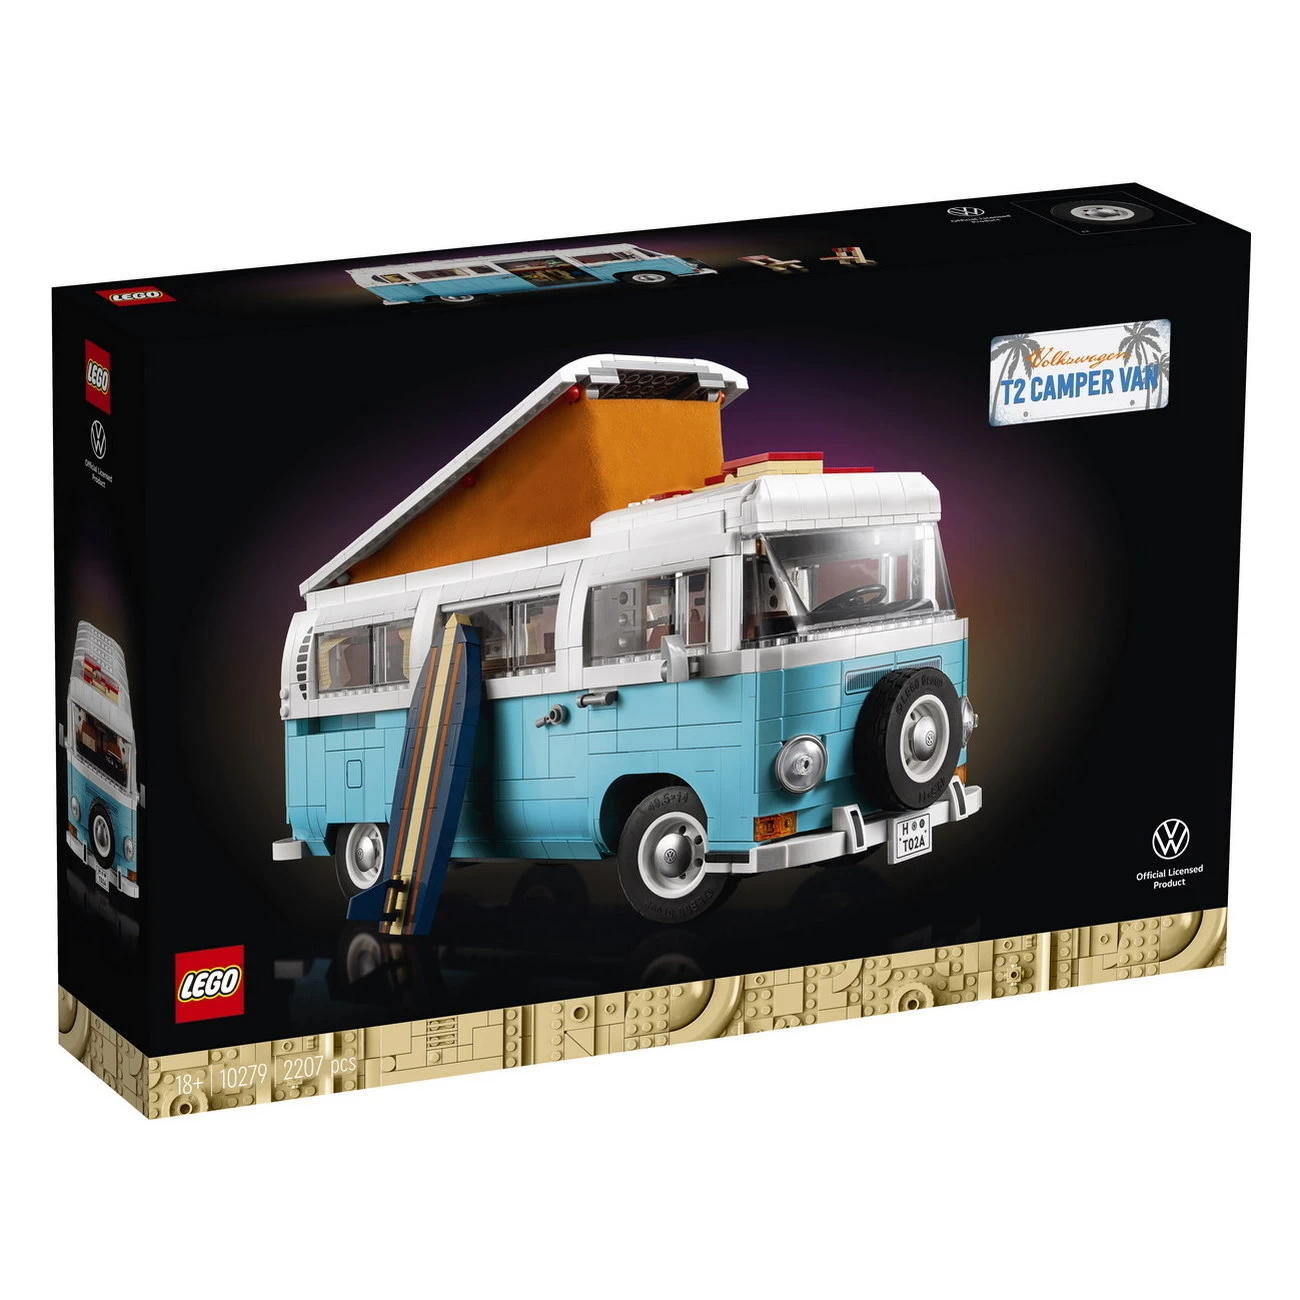 LEGO Creator Expert 10279 - Volkswagen T2 Campingbus